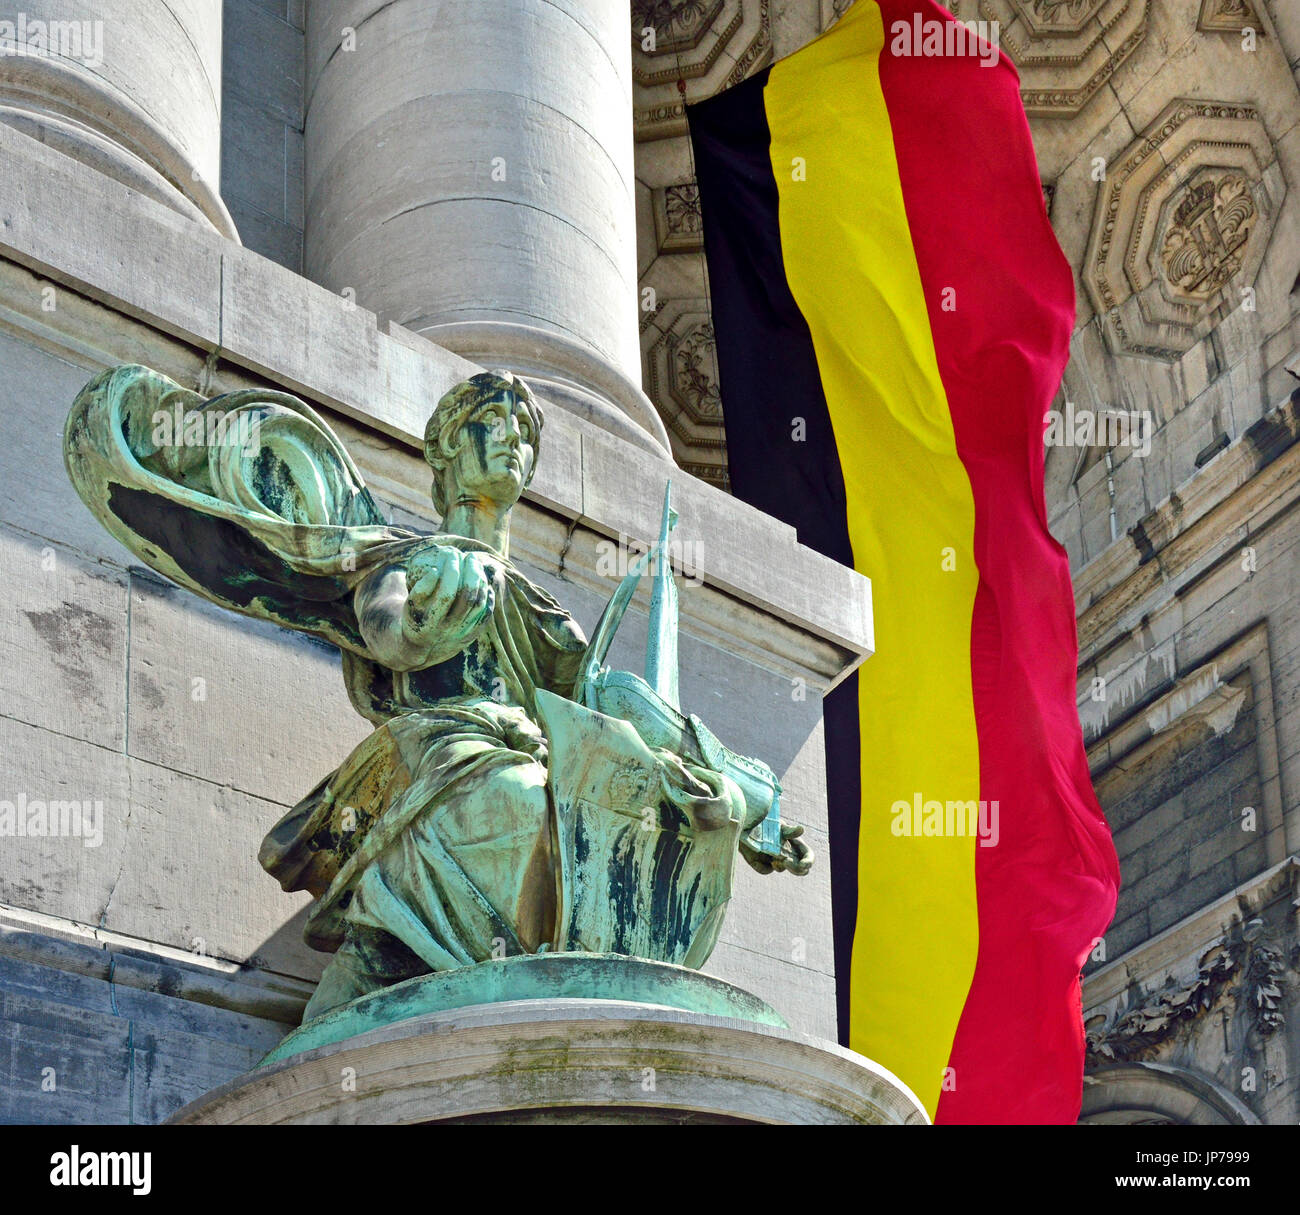 Brüssel, Belgien. Parc du Cinquantenaire / Jubelpark. Arc du Cinquantenaire / Triumphal arch (1905) Statue darstellt "Anvers" und die belgische Flagge Stockfoto